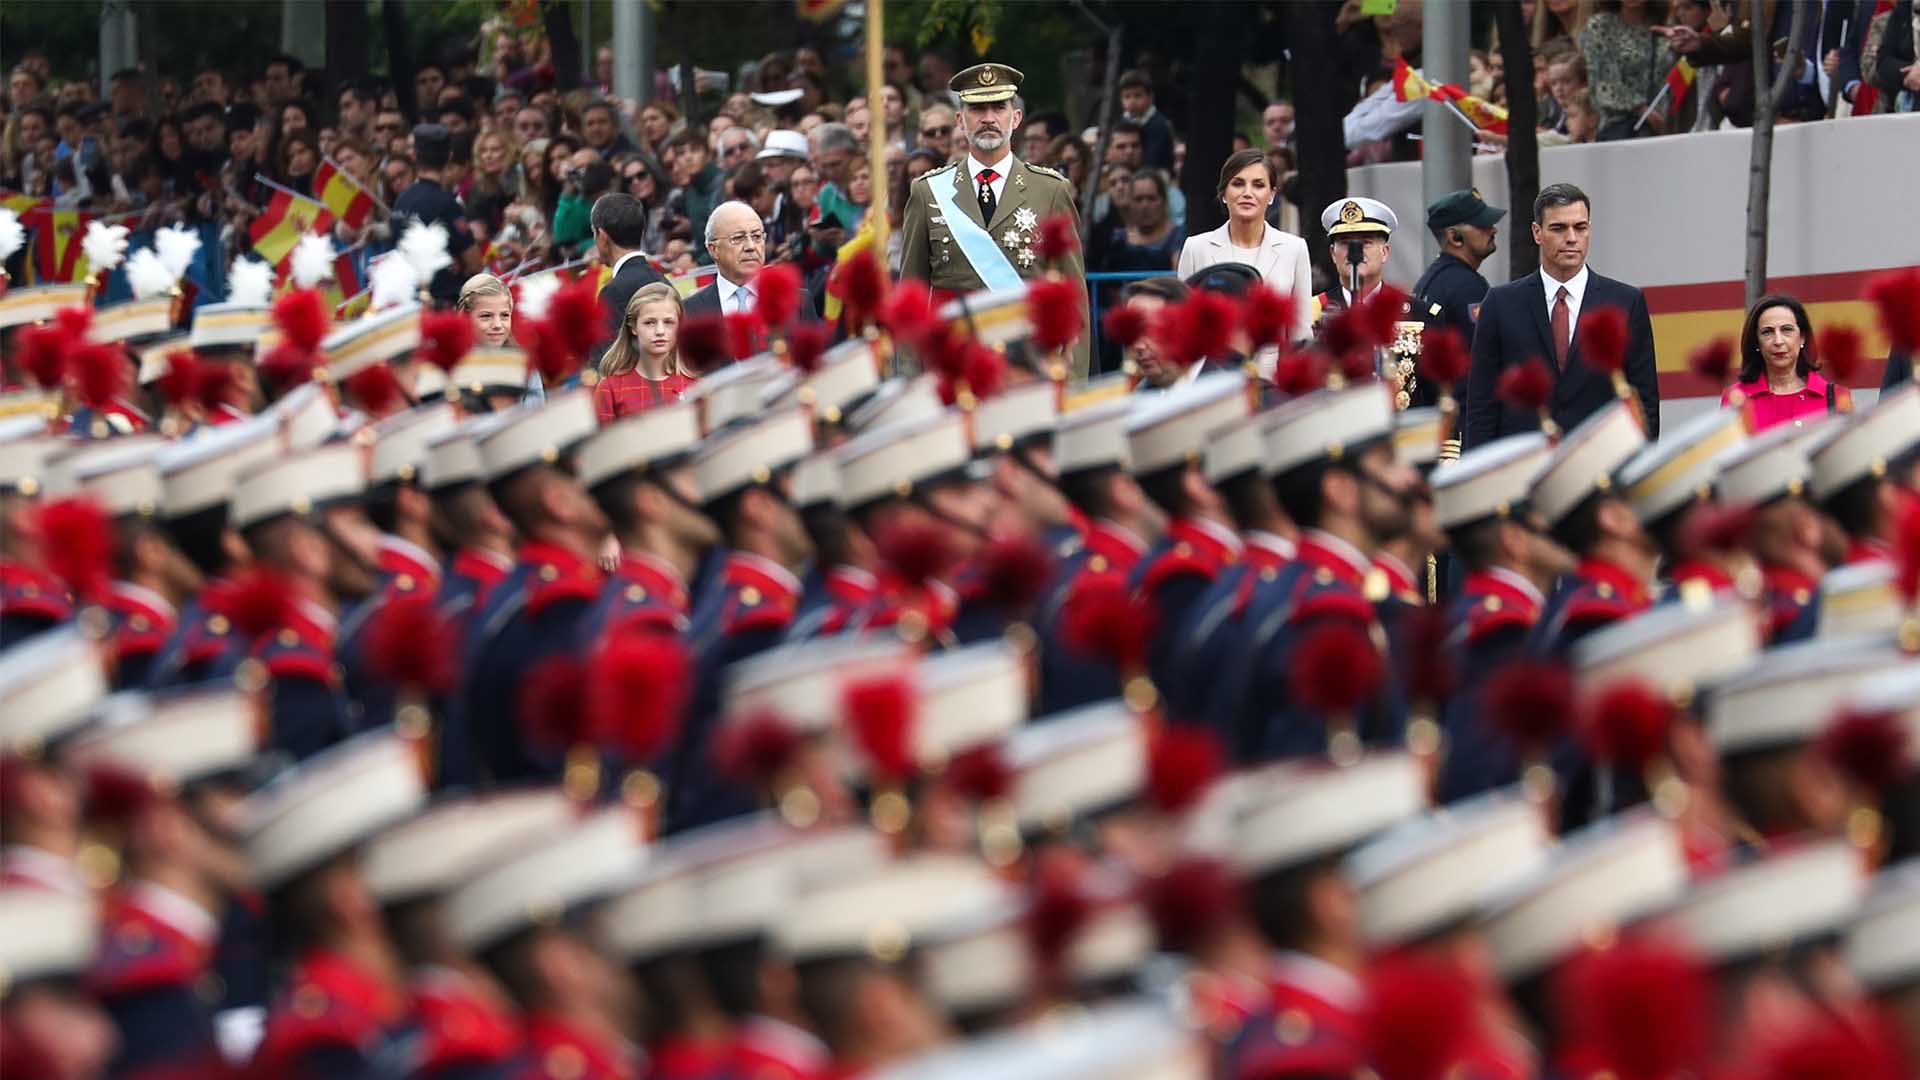 Pedro Sánchez se estrena entre abucheos como presidente en el desfile de la Fiesta Nacional